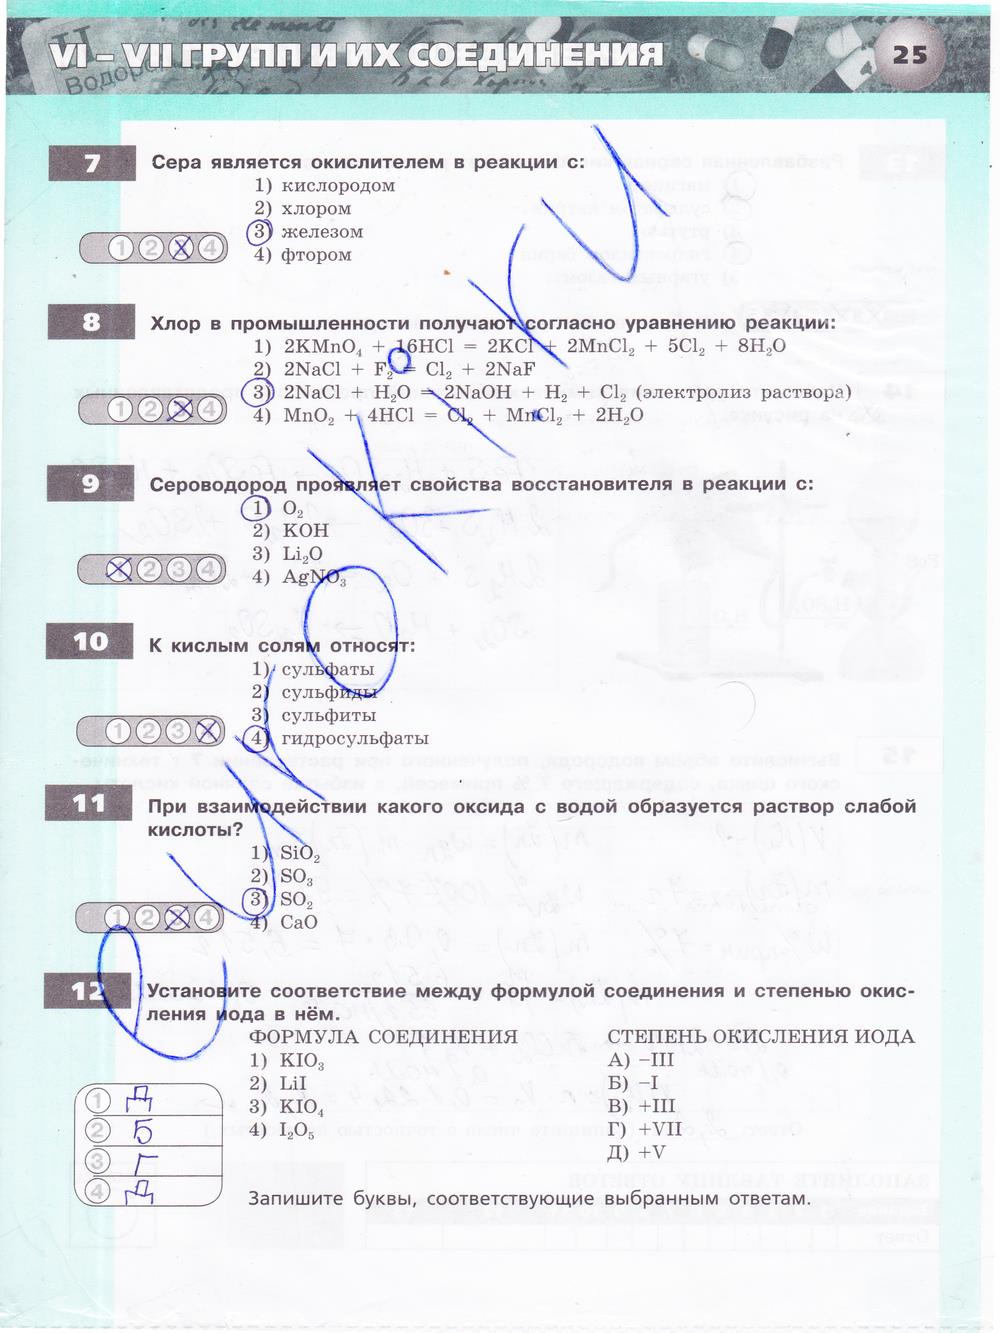 гдз 9 класс тетрадь-экзаменатор страница 25 химия Бобылева, Бирюлина